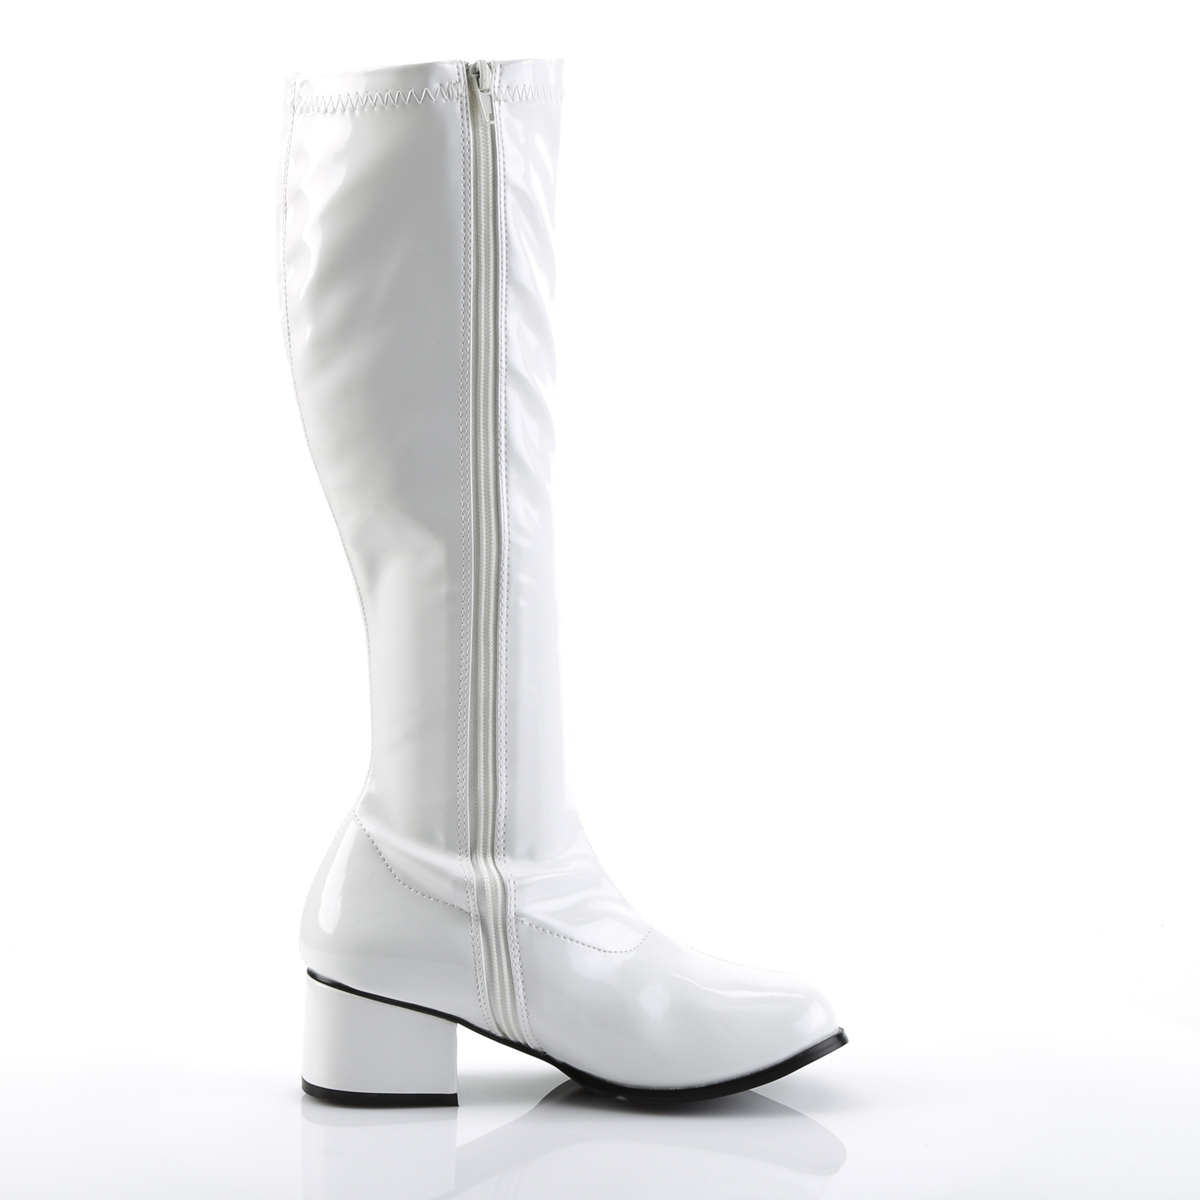 Hvide laklæder støvler blokhæl 5 cm 70 erne disco boots knæhøje - patent læder støvler